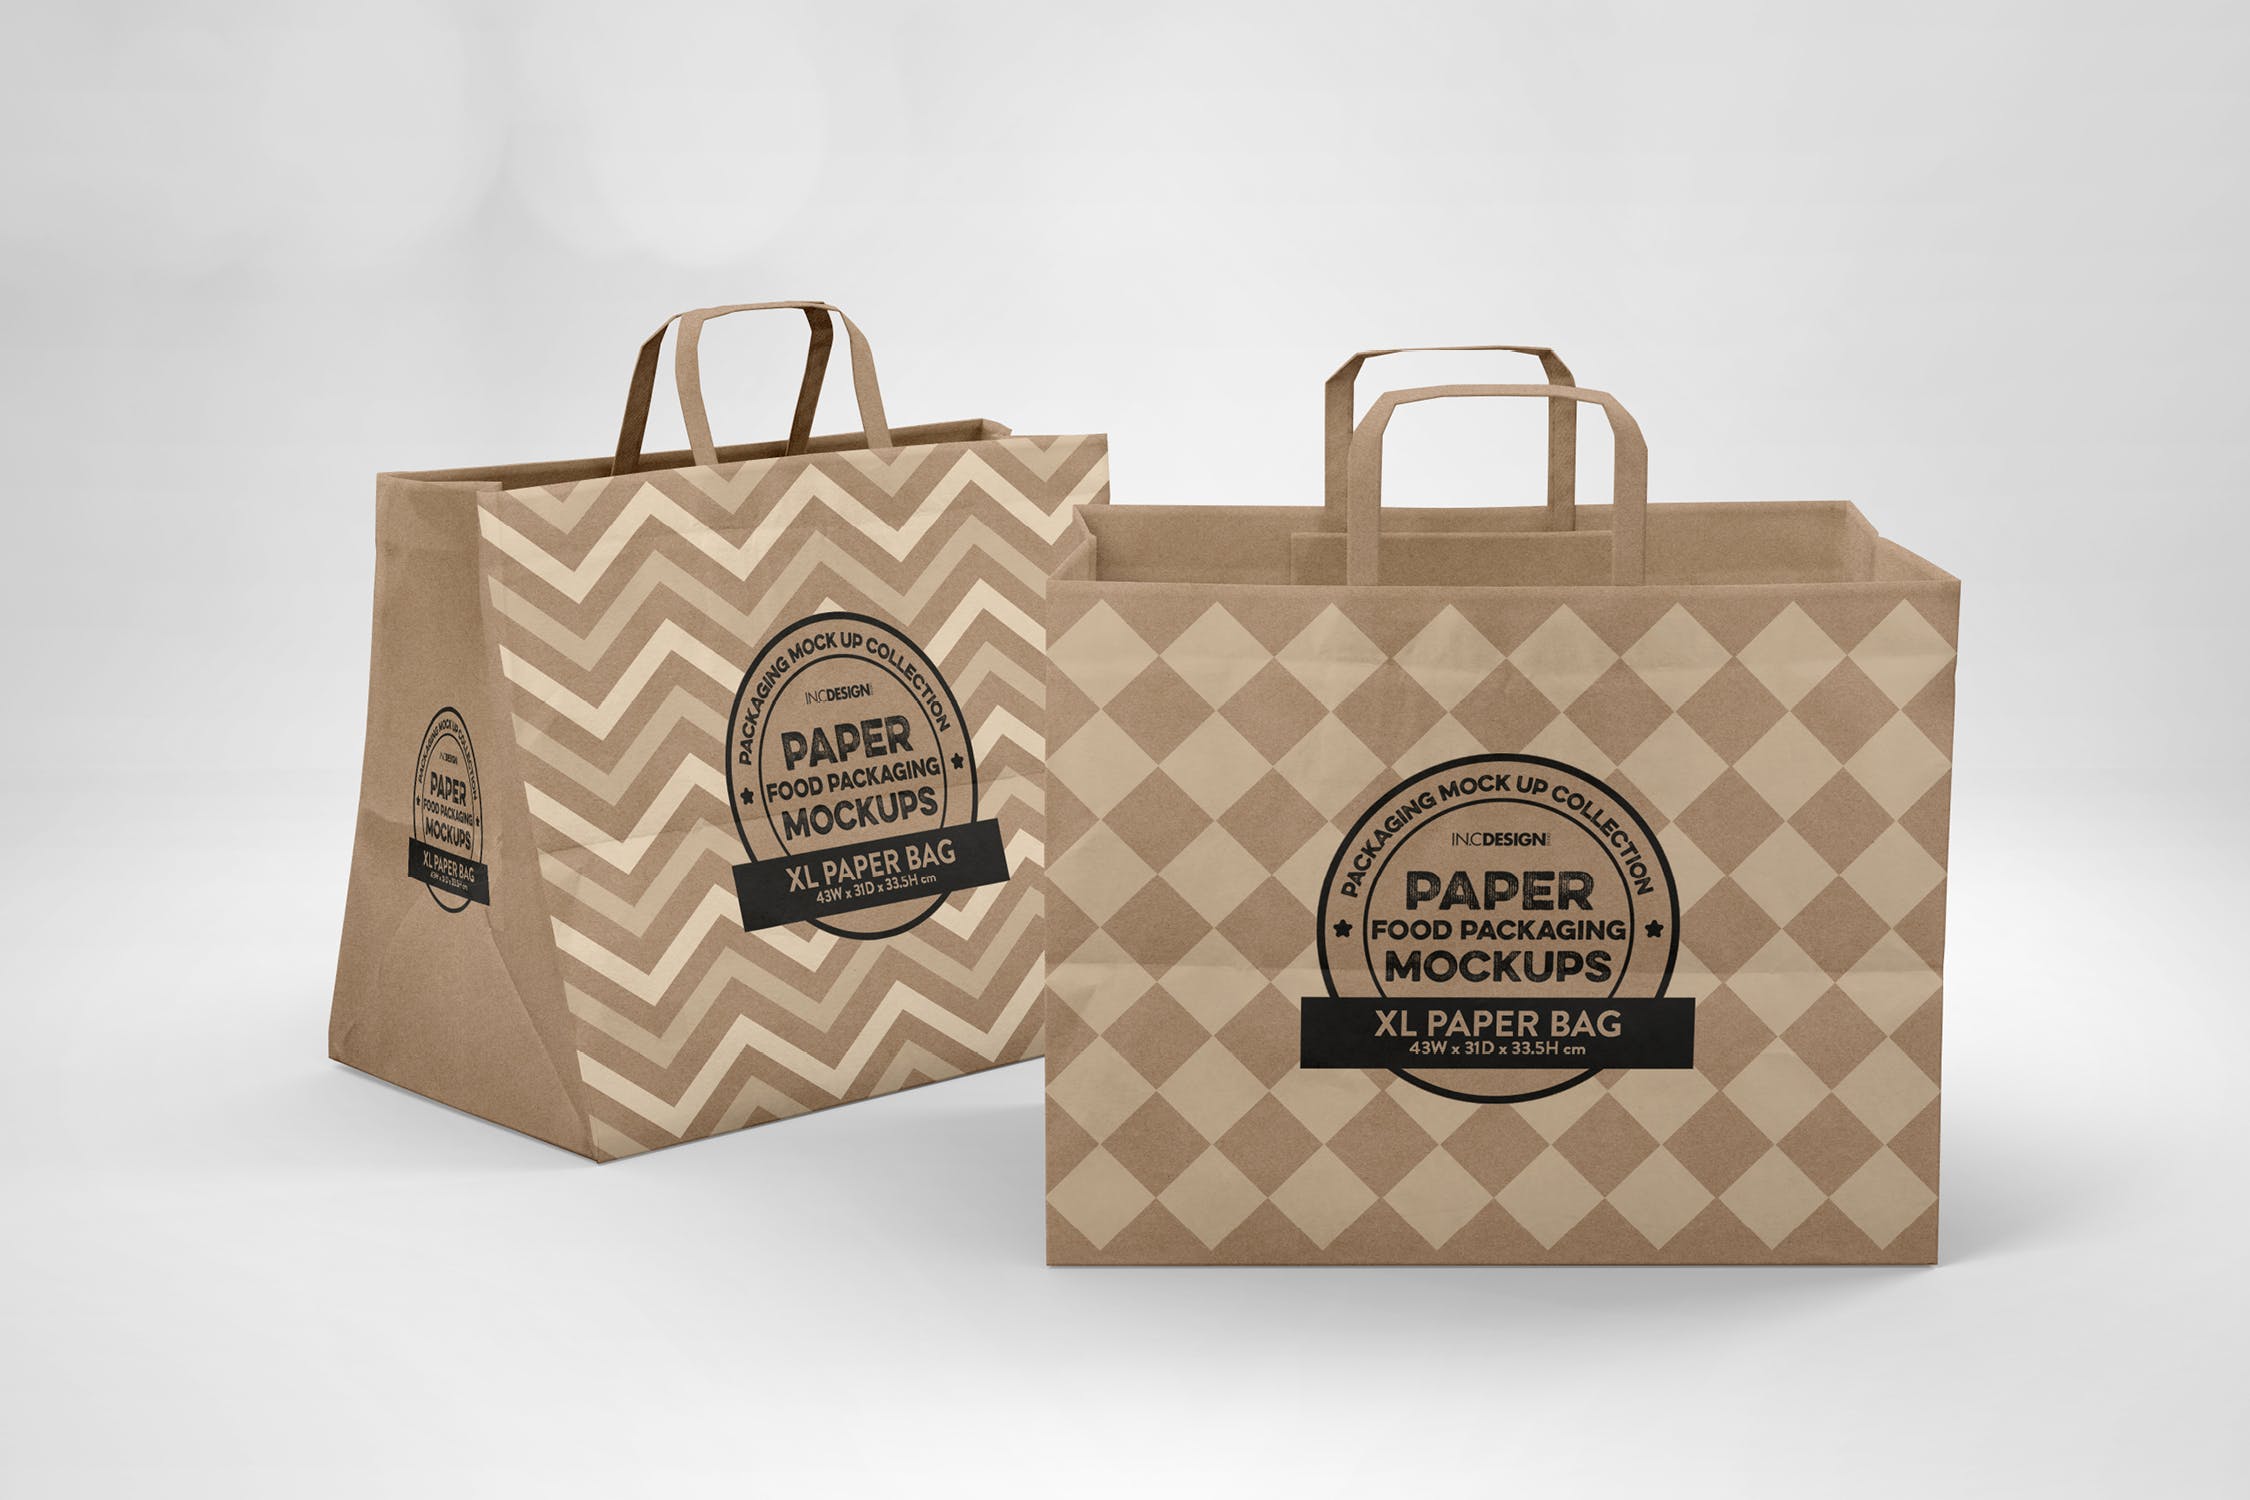 加大型购物纸袋设计图第一素材精选模板 XL Paper Bags with Flat Handles Mockup插图(3)